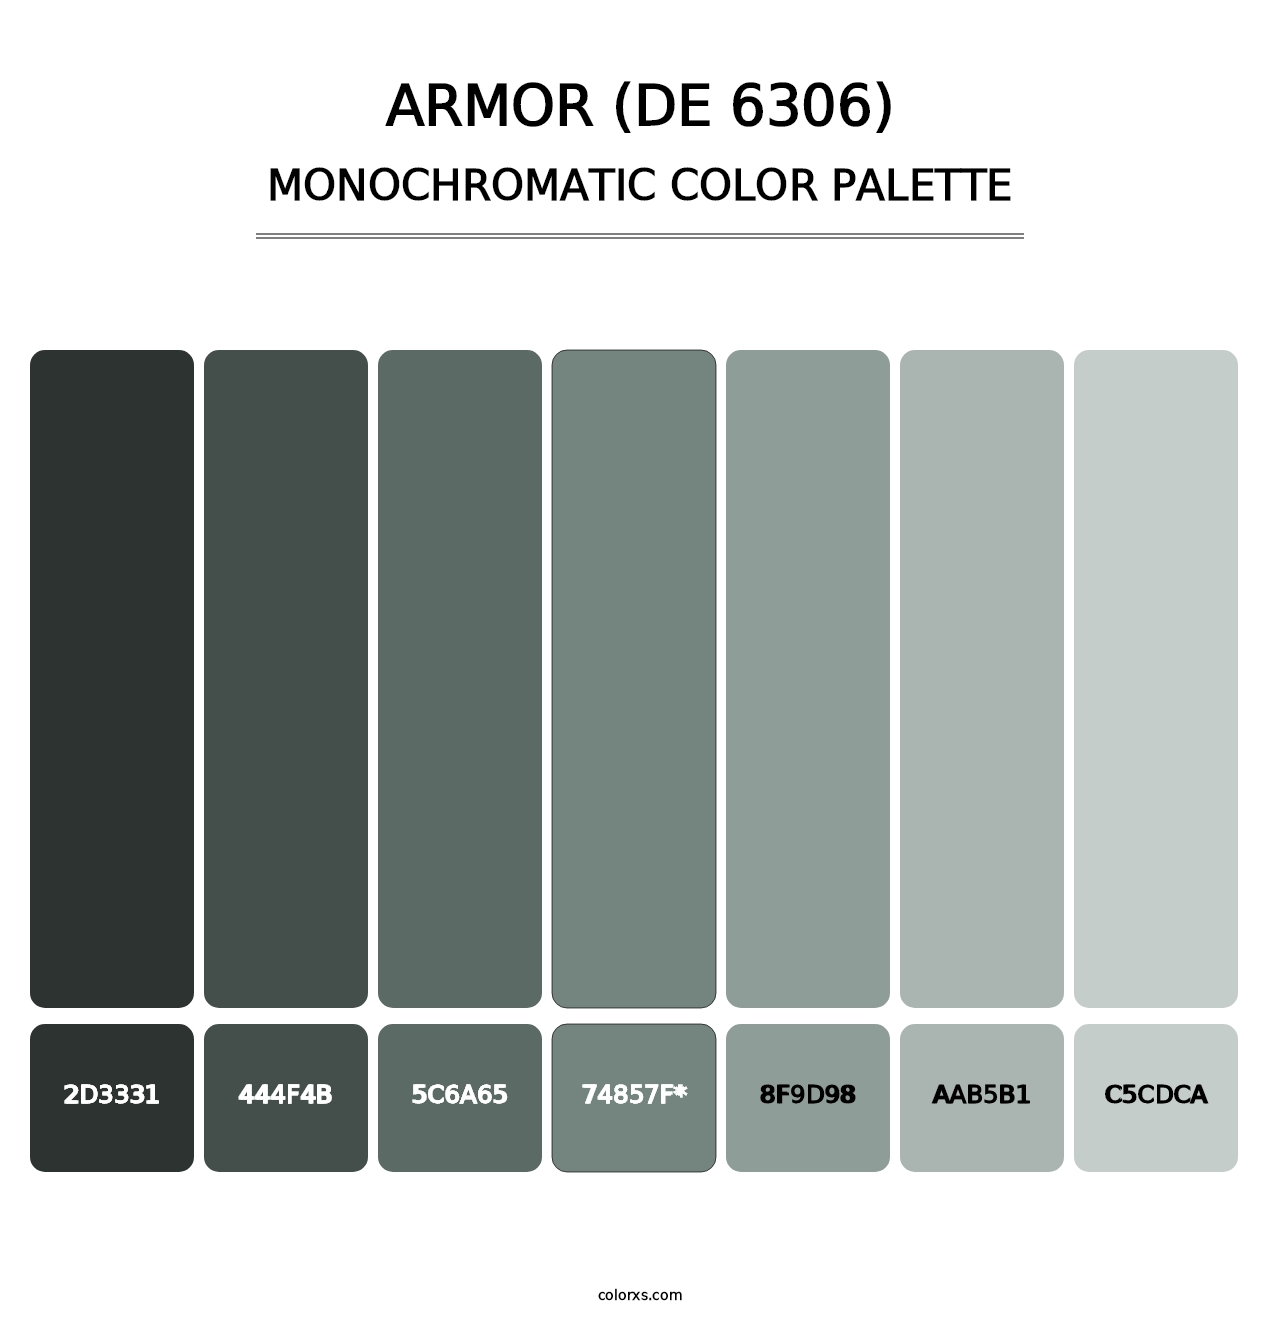 Armor (DE 6306) - Monochromatic Color Palette